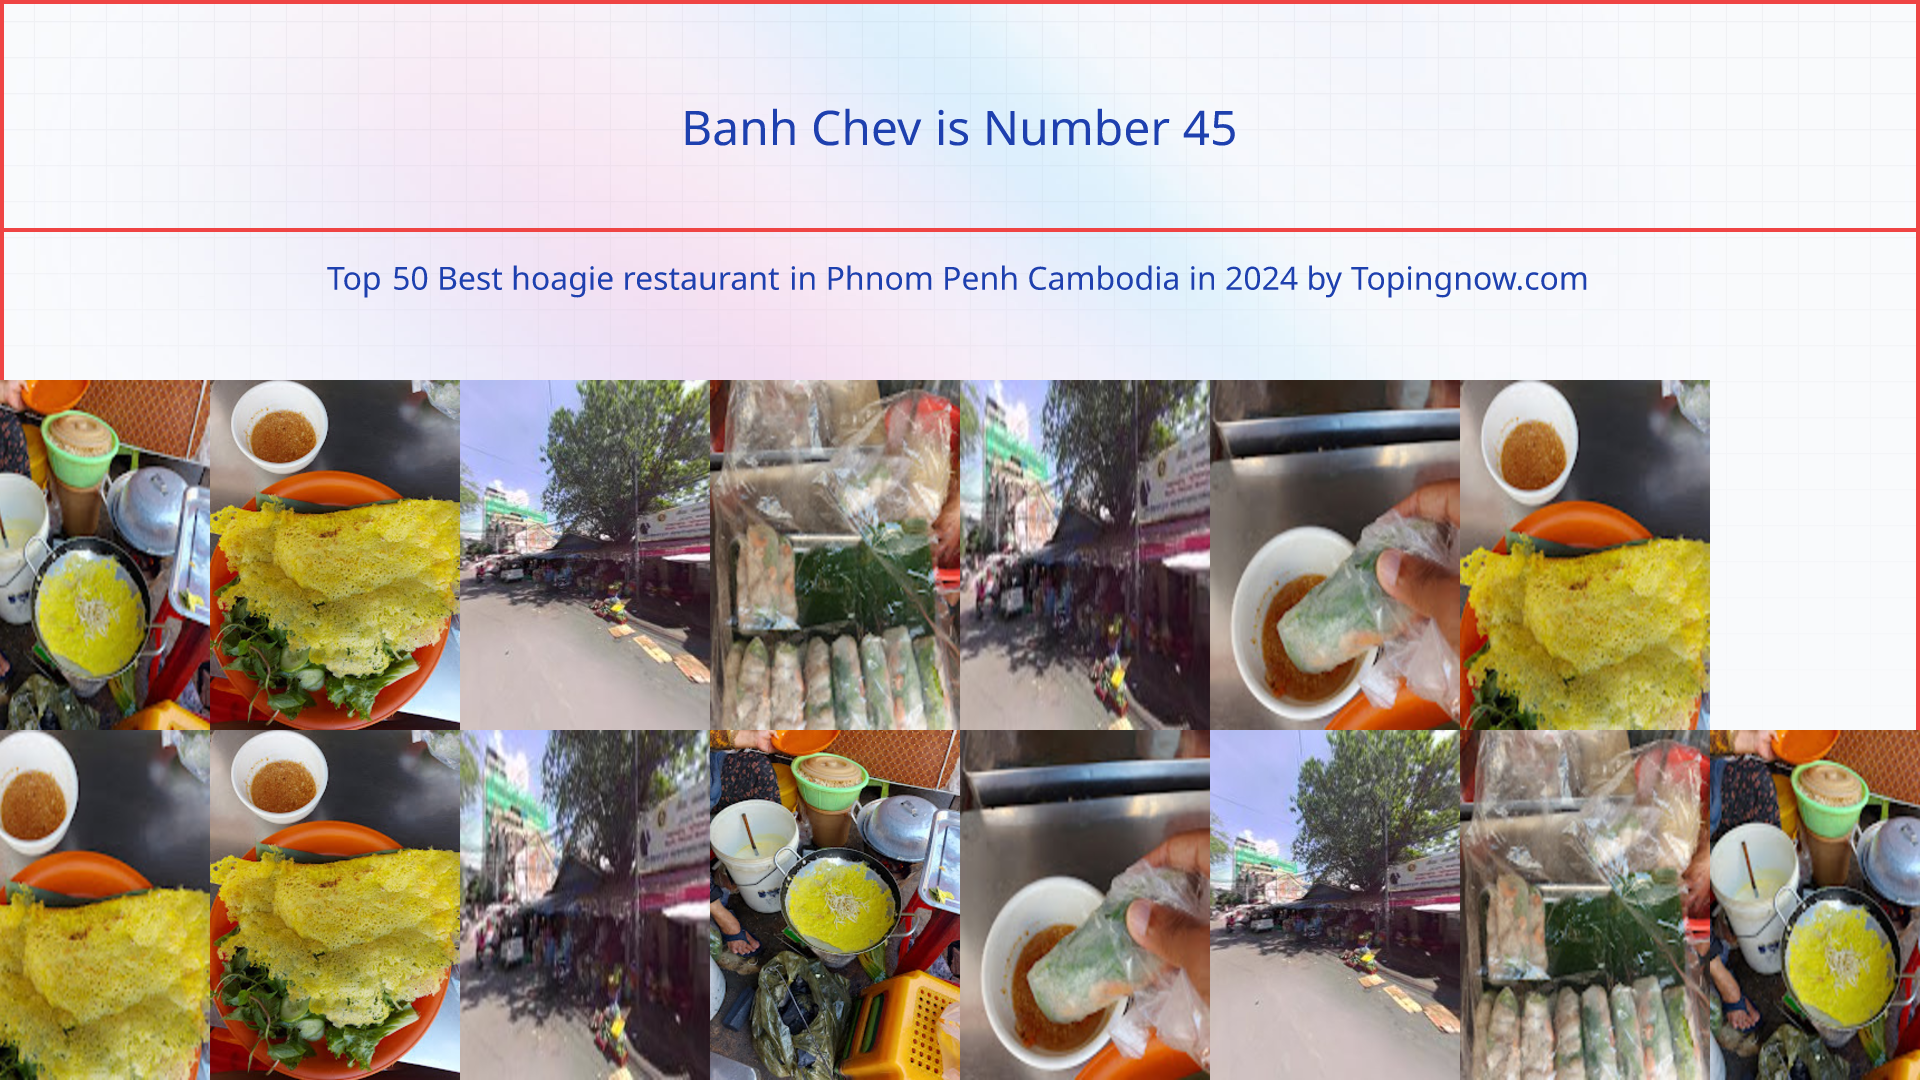 Banh Chev: Top 50 Best hoagie restaurant in Phnom Penh Cambodia in 2024